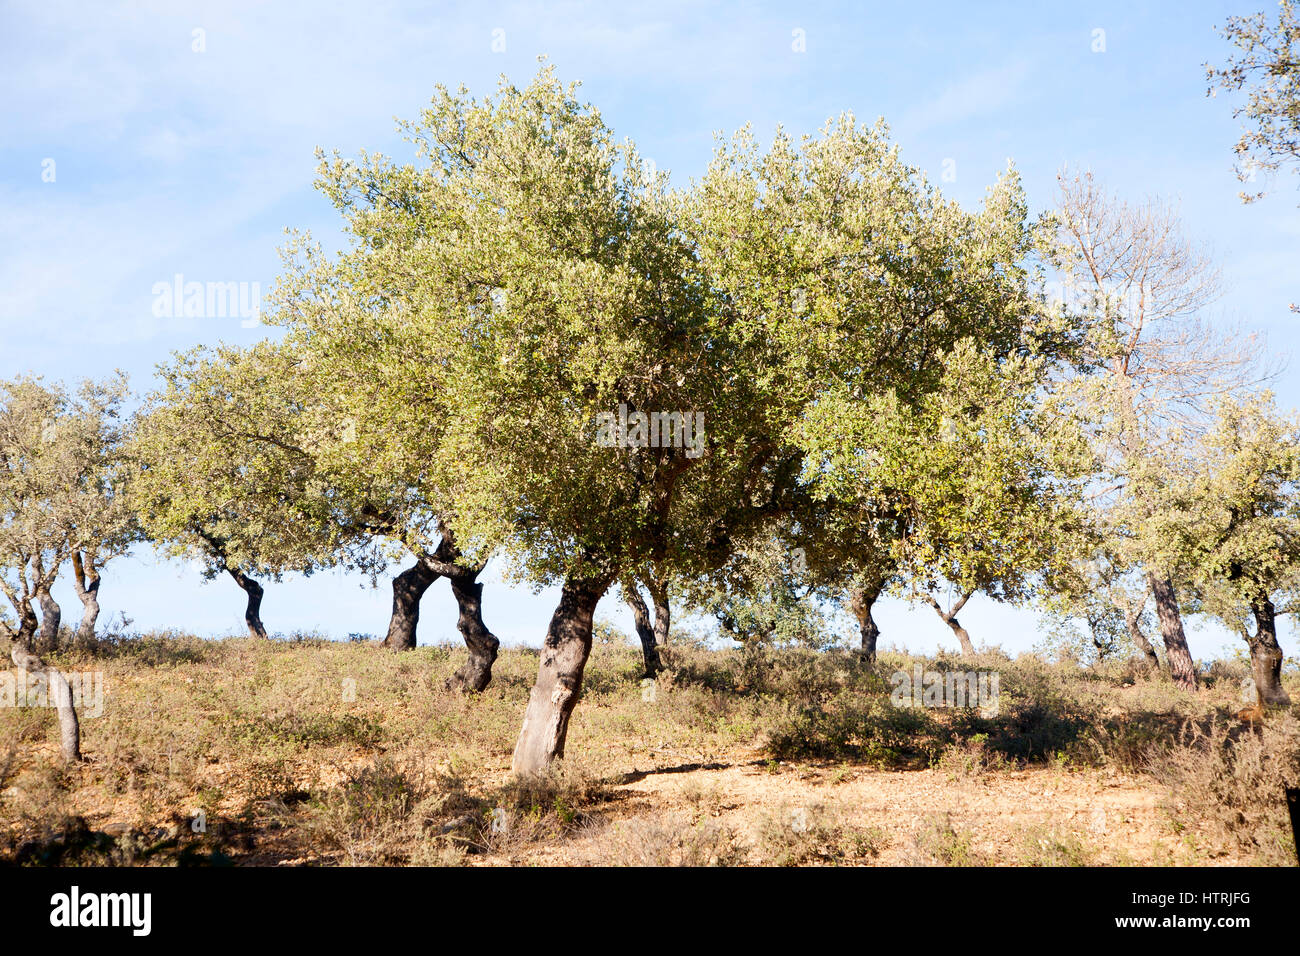 Korkeichen in Sierra de Aracena, Provinz Huelva, Spanien Stockfoto